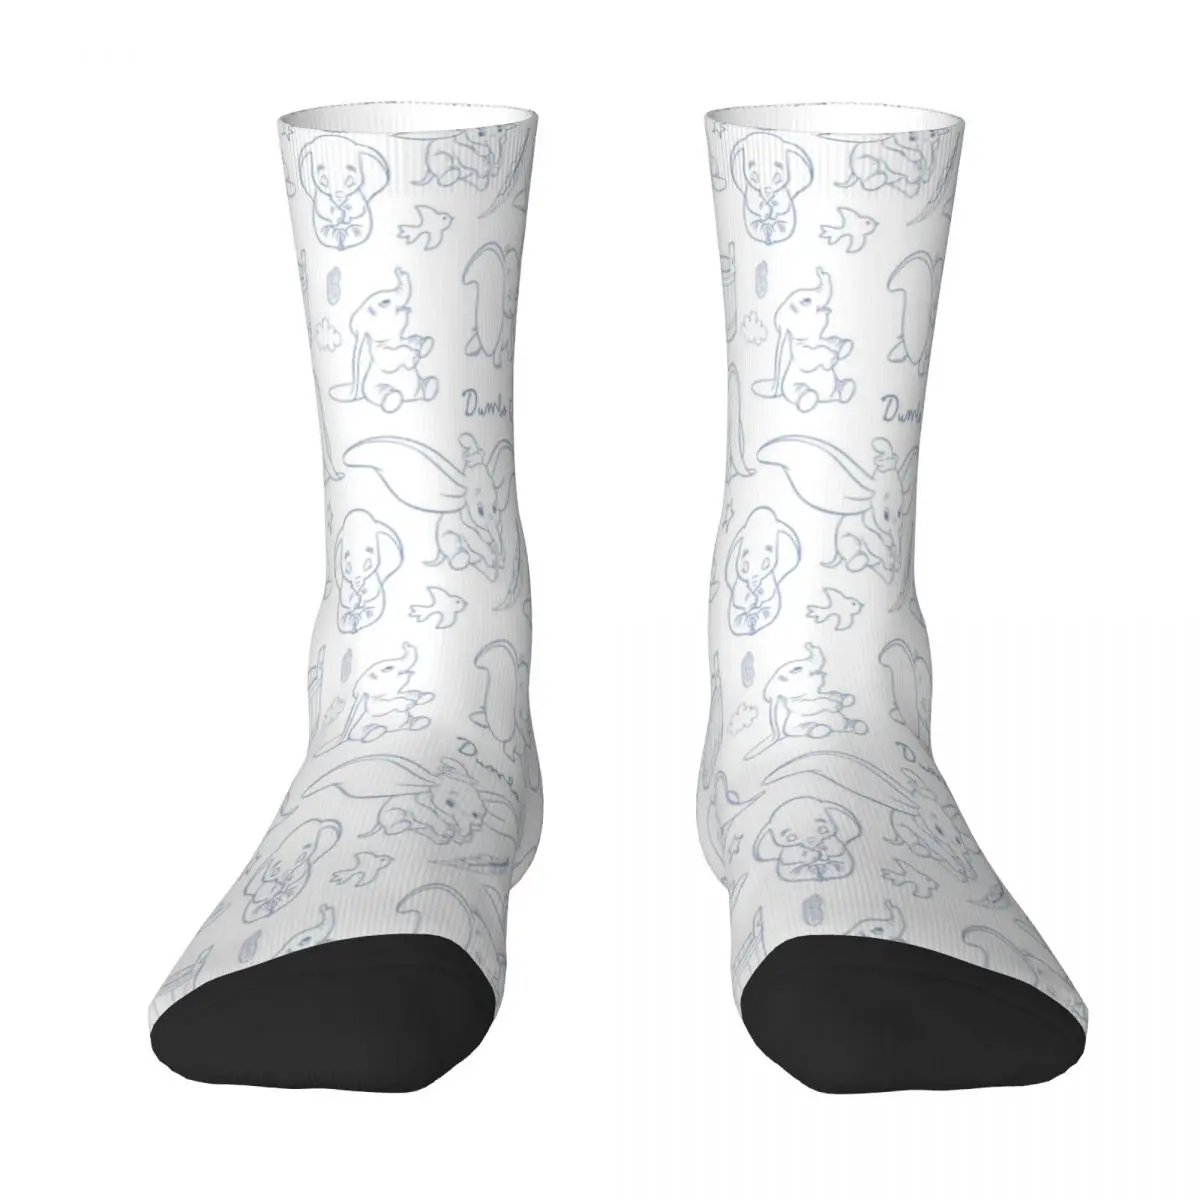 

Disney Dumbo Socks Men's Women's Polyester Cute Elephant Socks Hip Hop Spring Summer Autumn Winter Middle Tube Stockings Gift